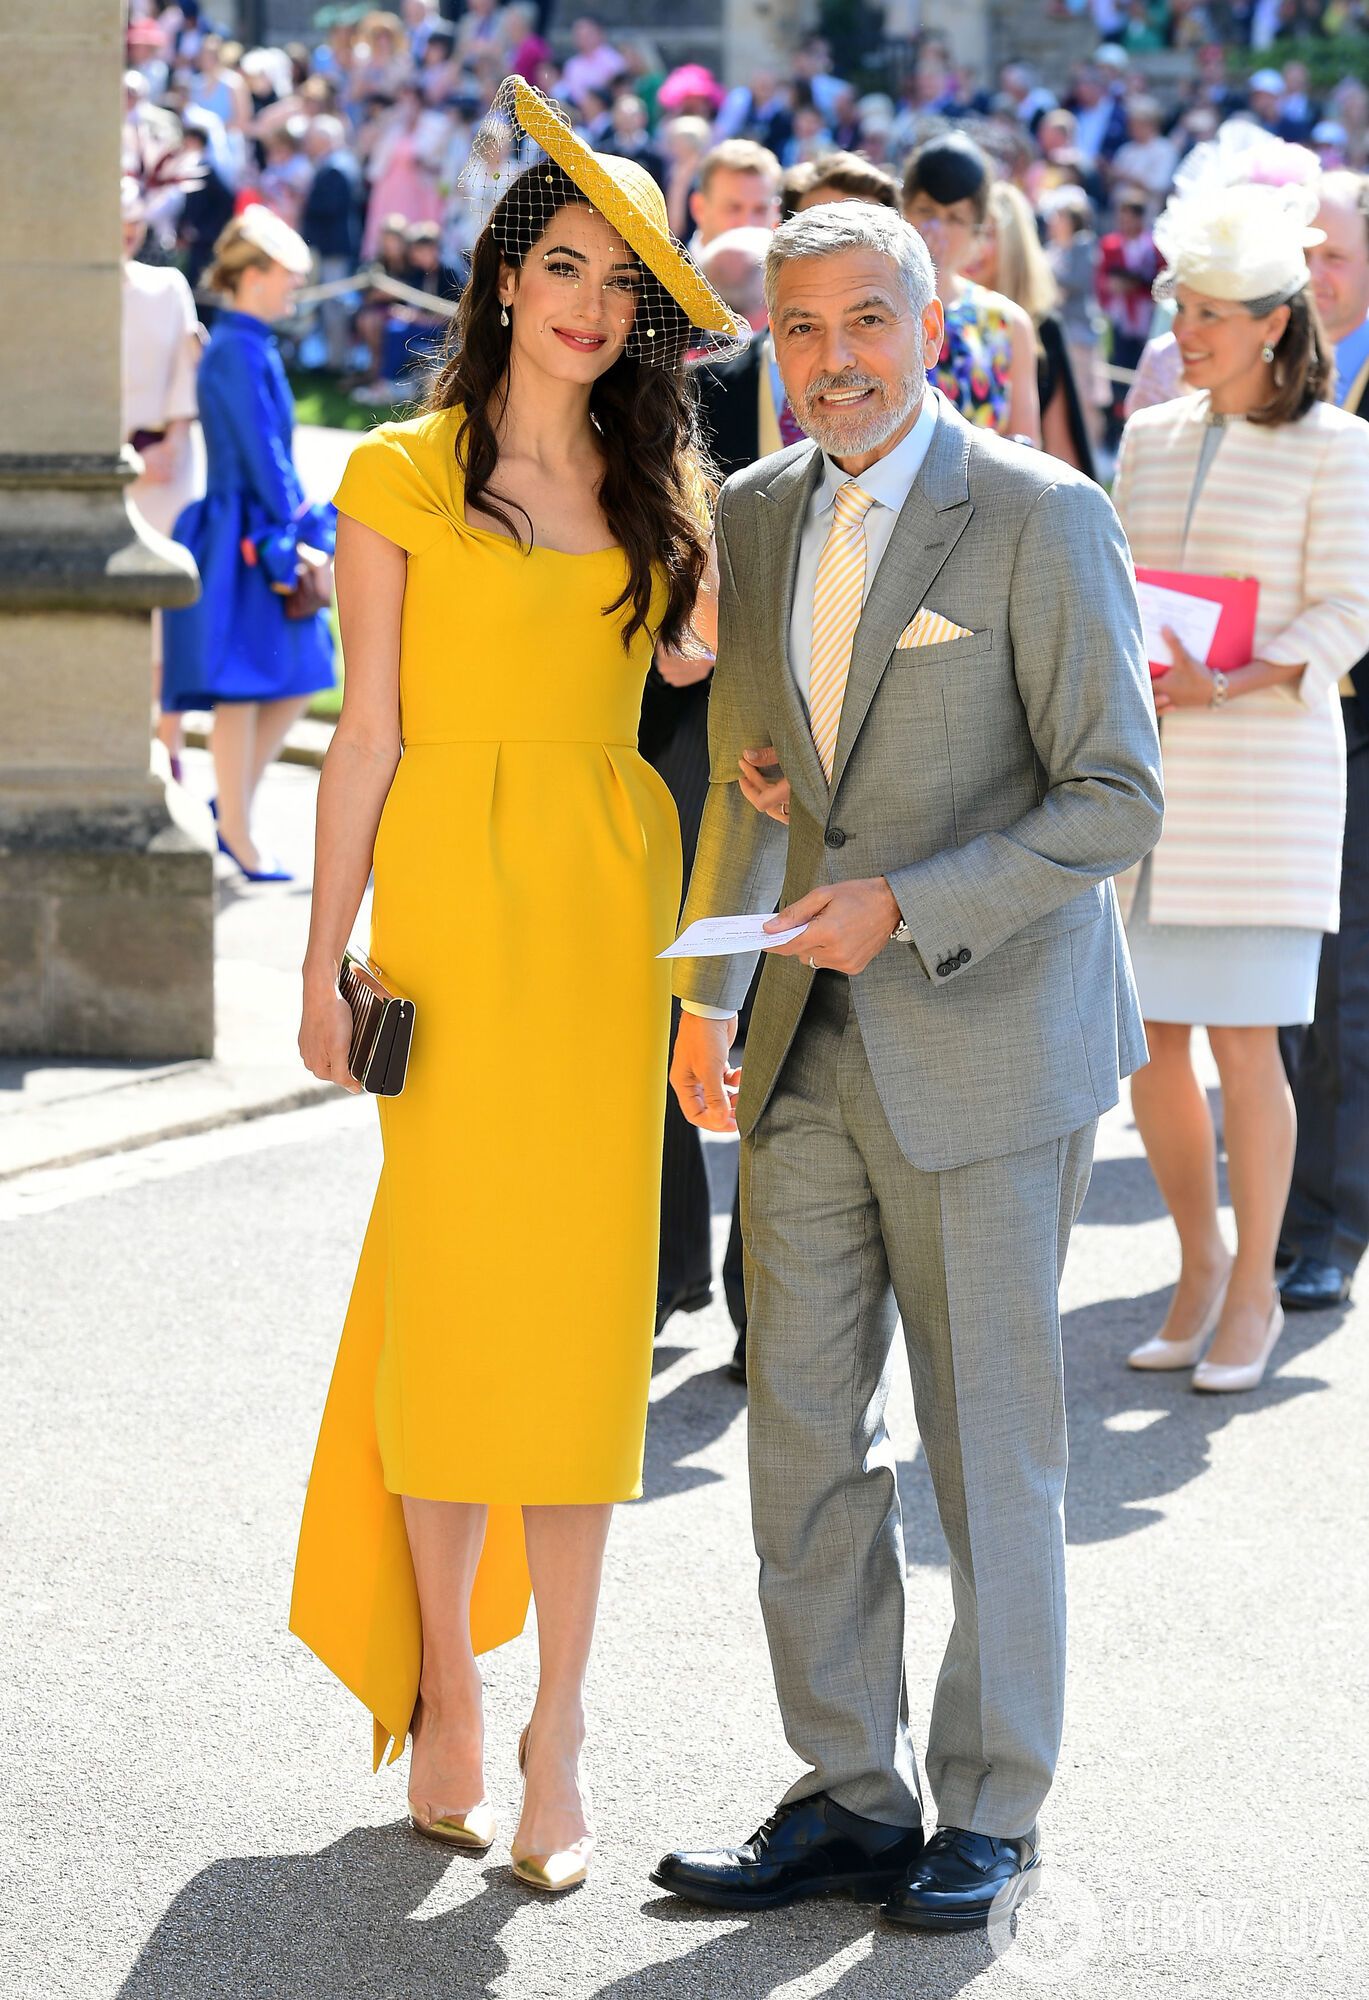 Амаль Клуні з'явилася на весіллі принца Гаррі в яскравому вбранні